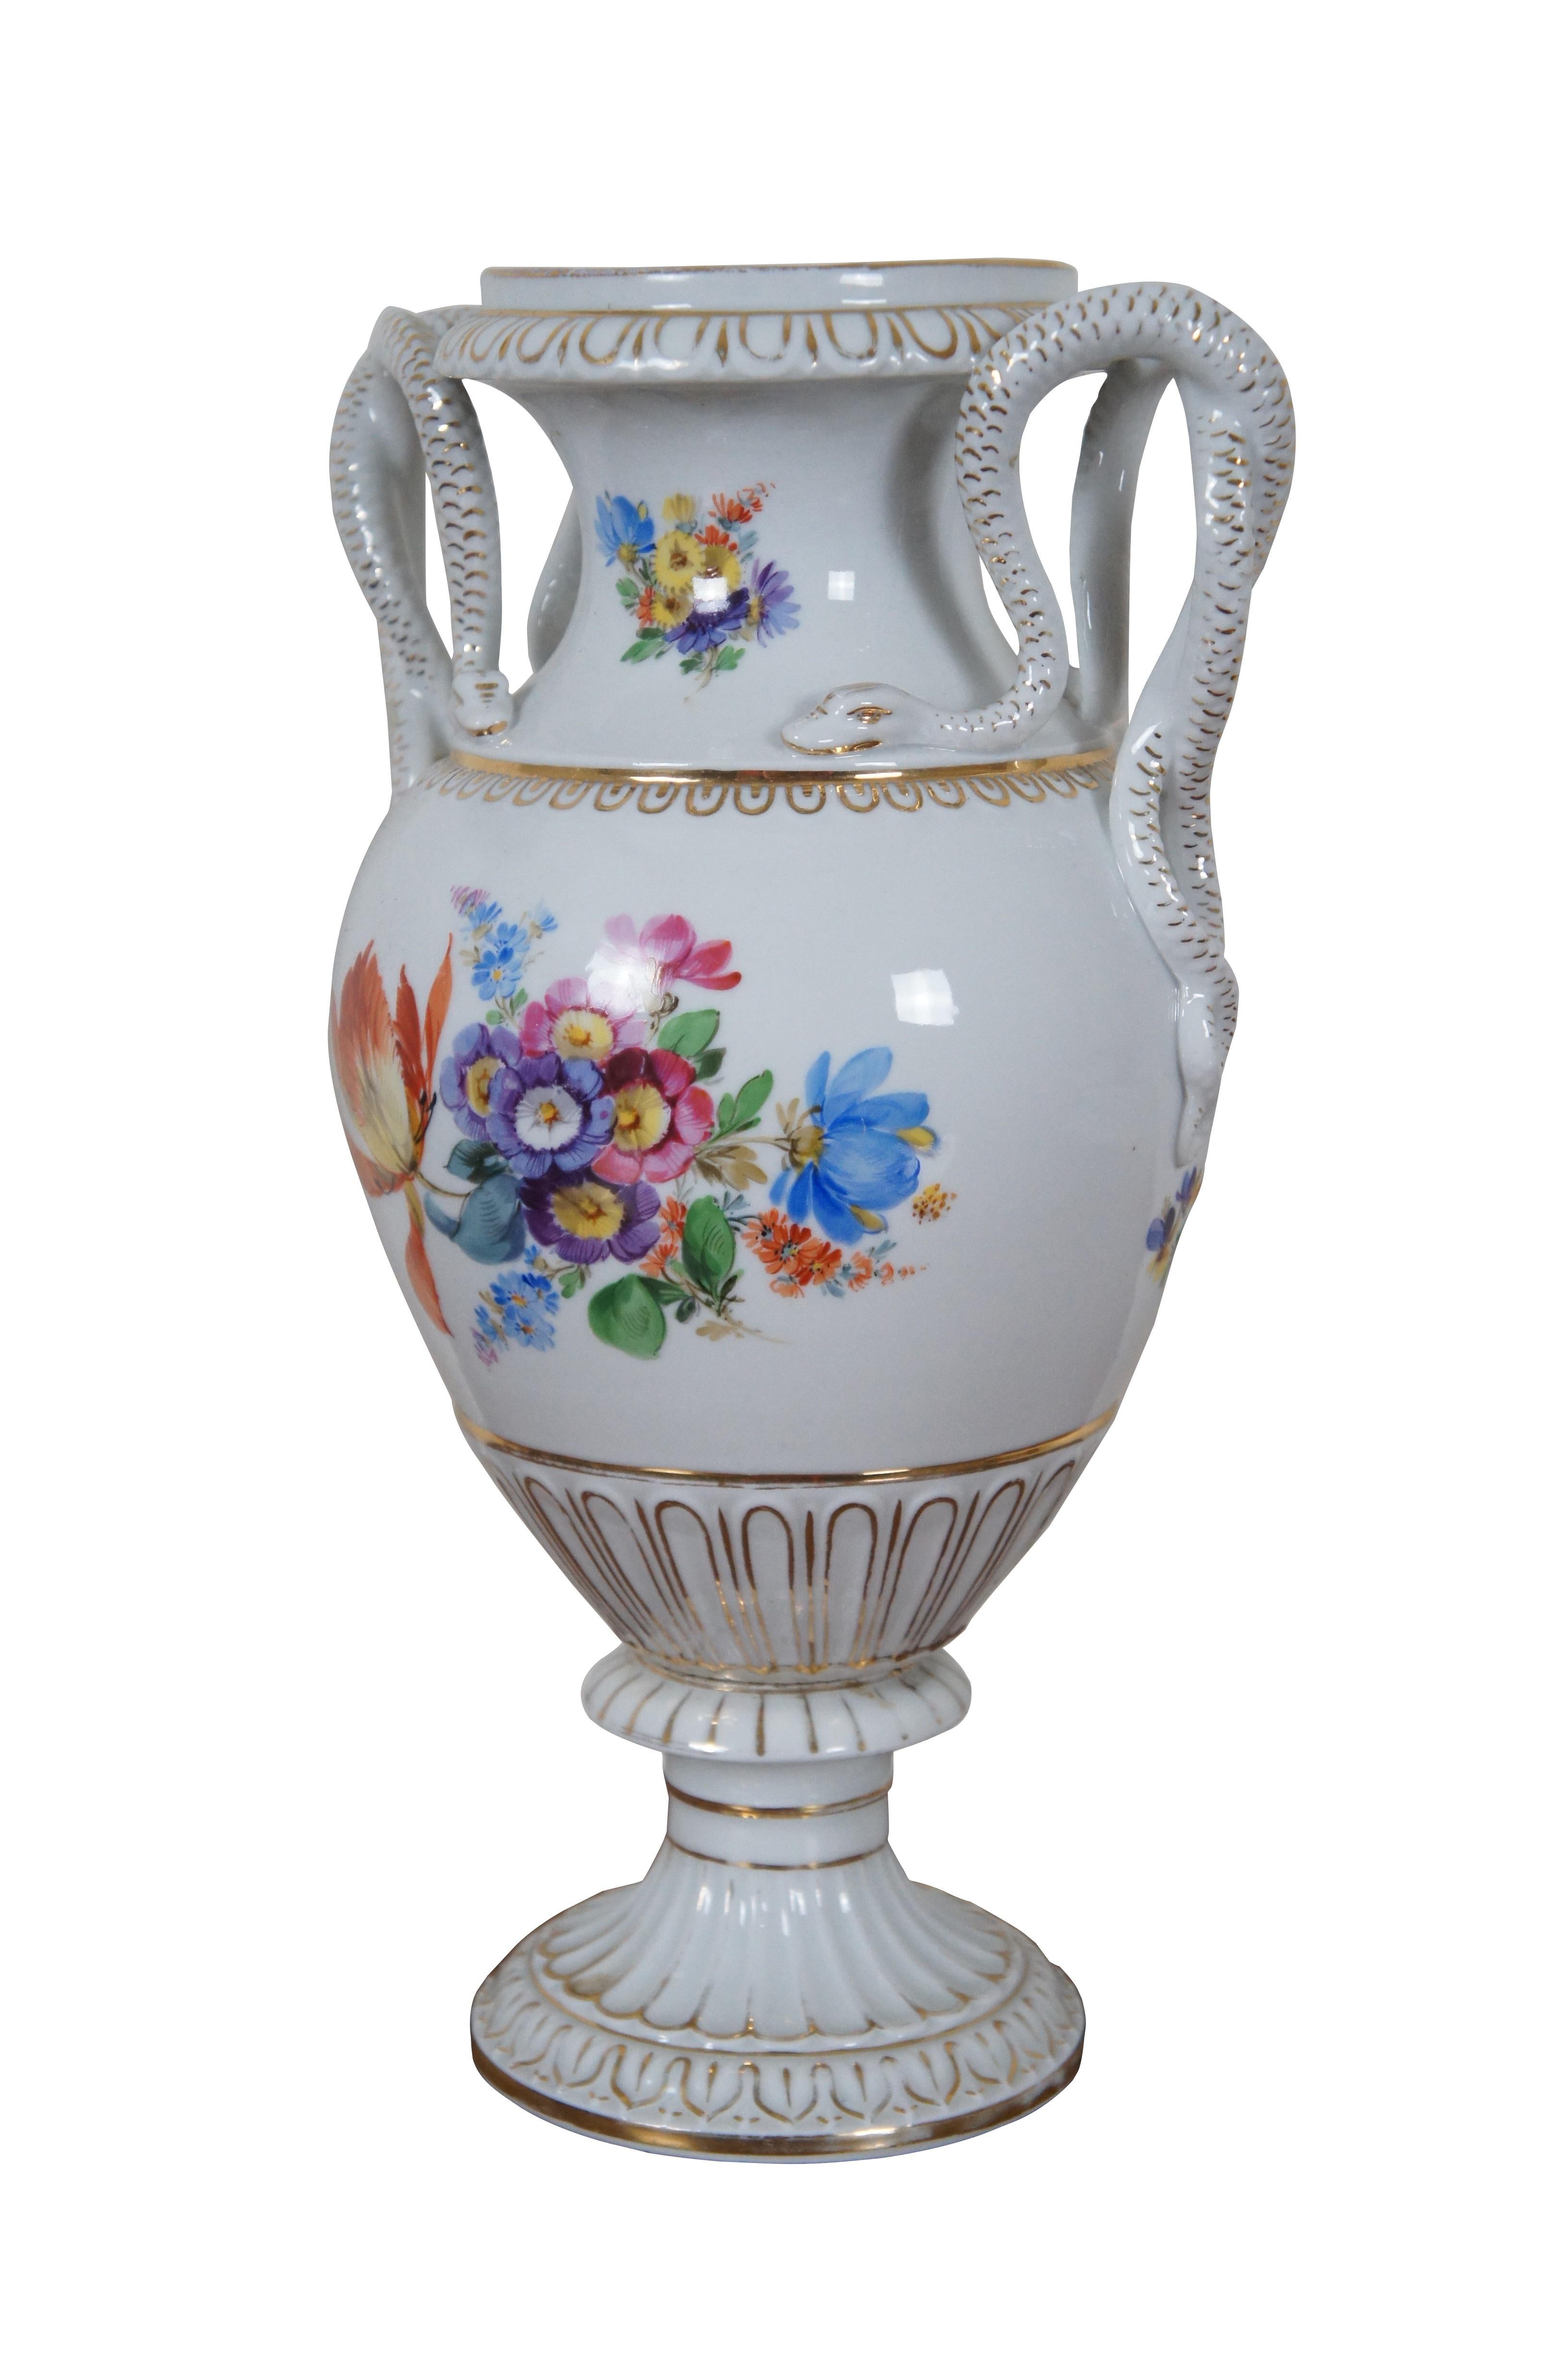 Antiquité allemande Meissen Dresden Porcelain Snake Handle Mantel Urn Vase 12